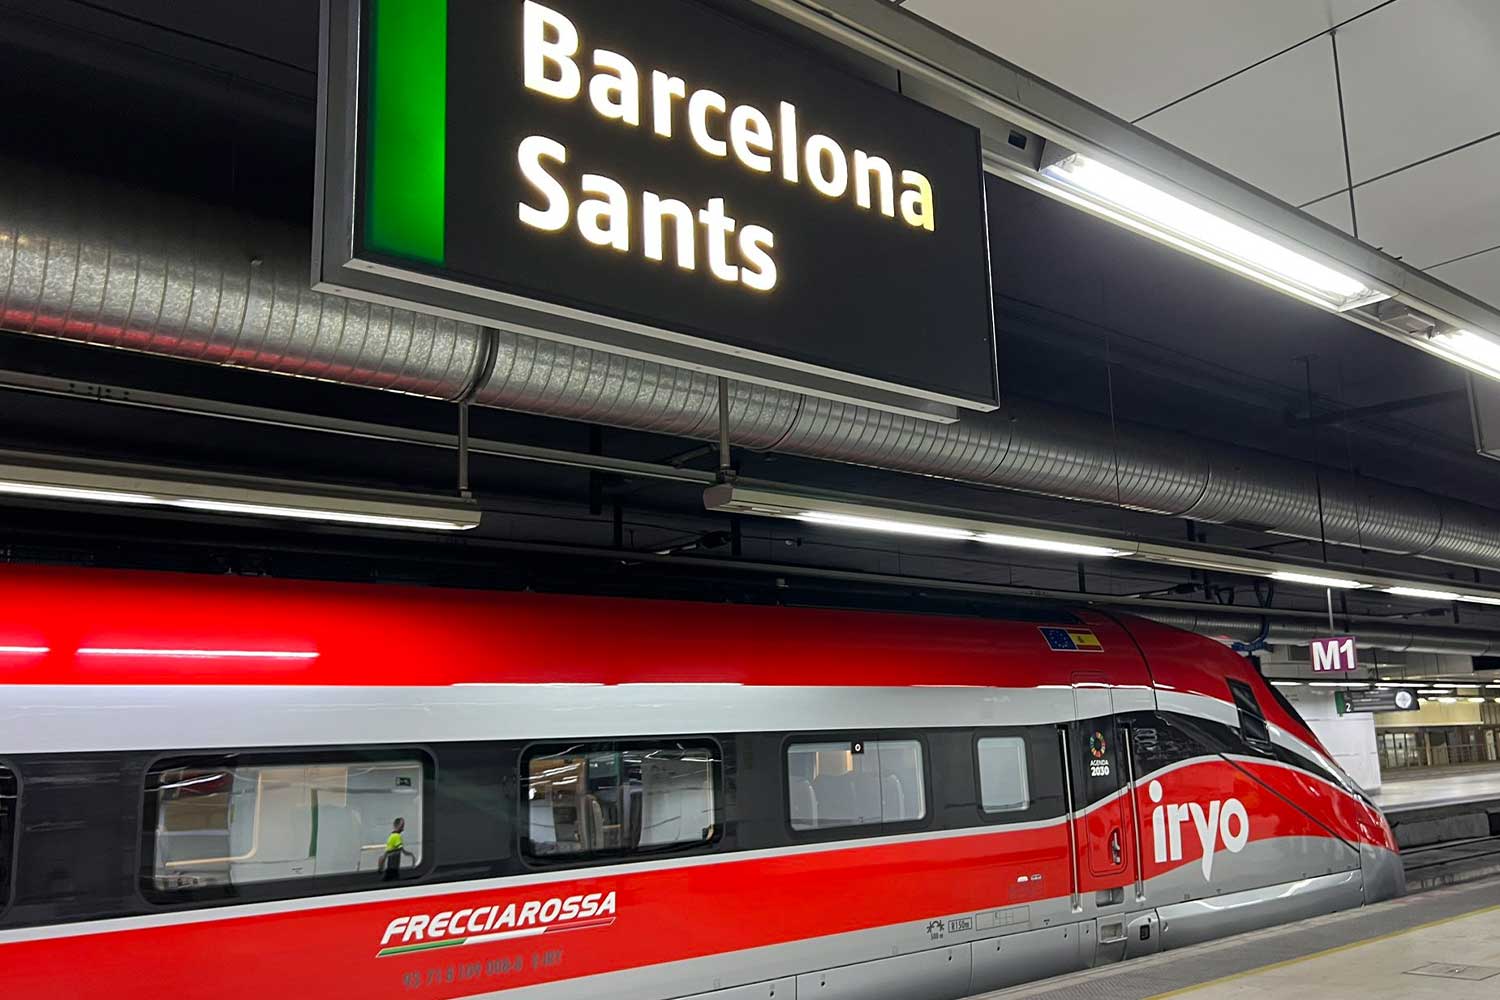 Alta velocità italiana in Spagna: Iryo festeggia il primo anno con 5,2 milioni di passeggeri